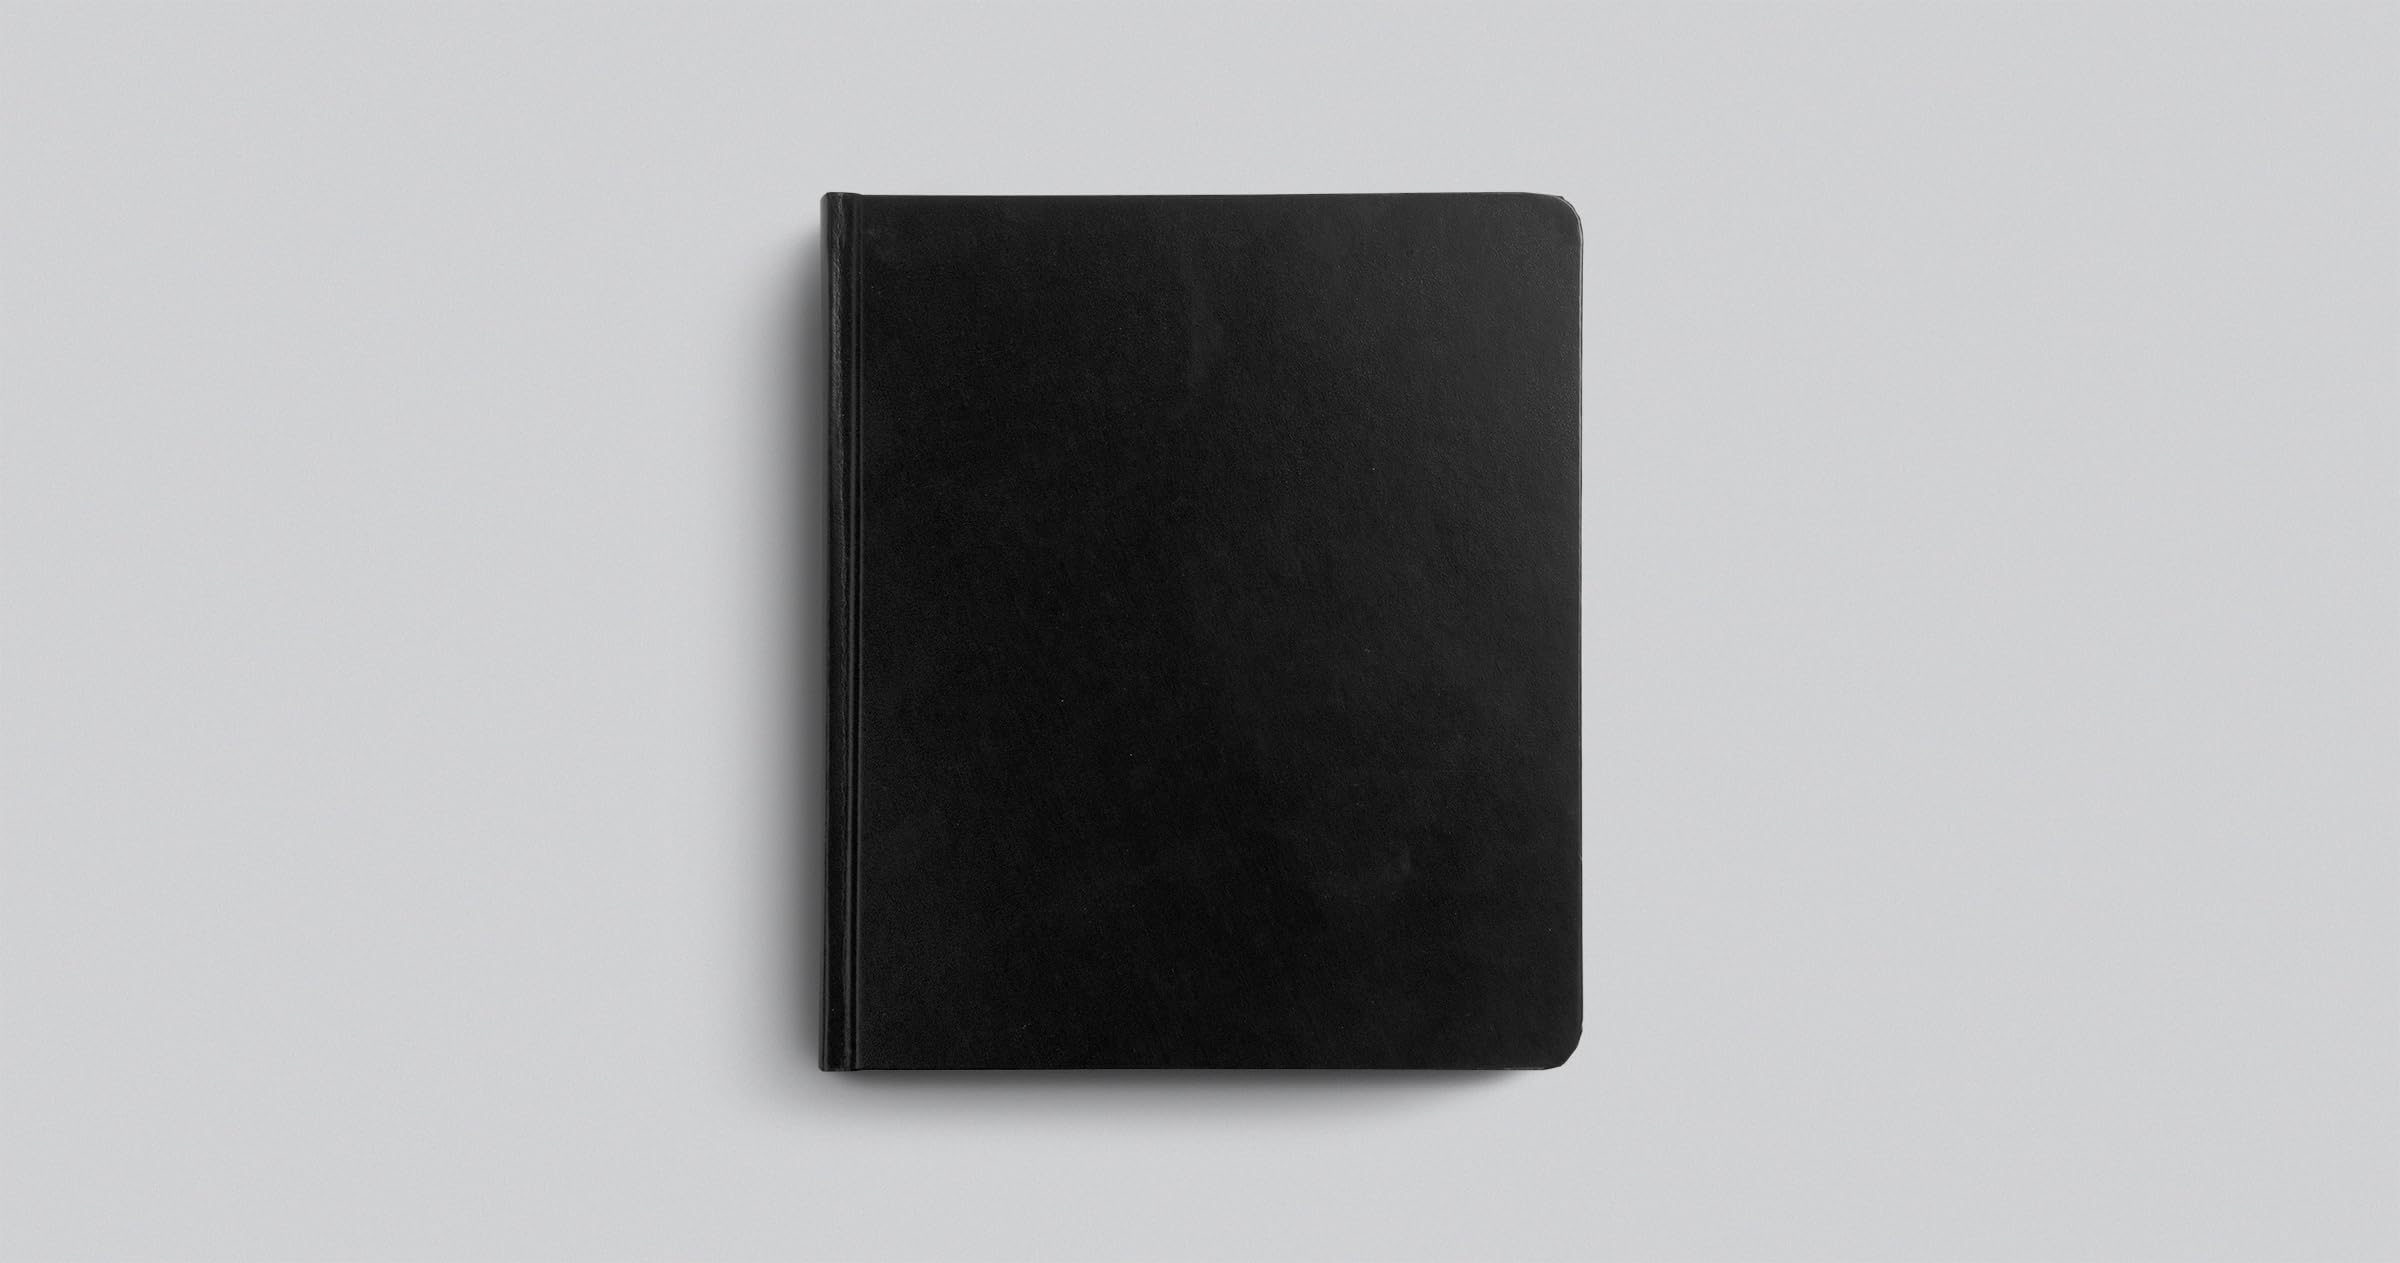 ESV Journaling Study Bible (Hardcover, Black)